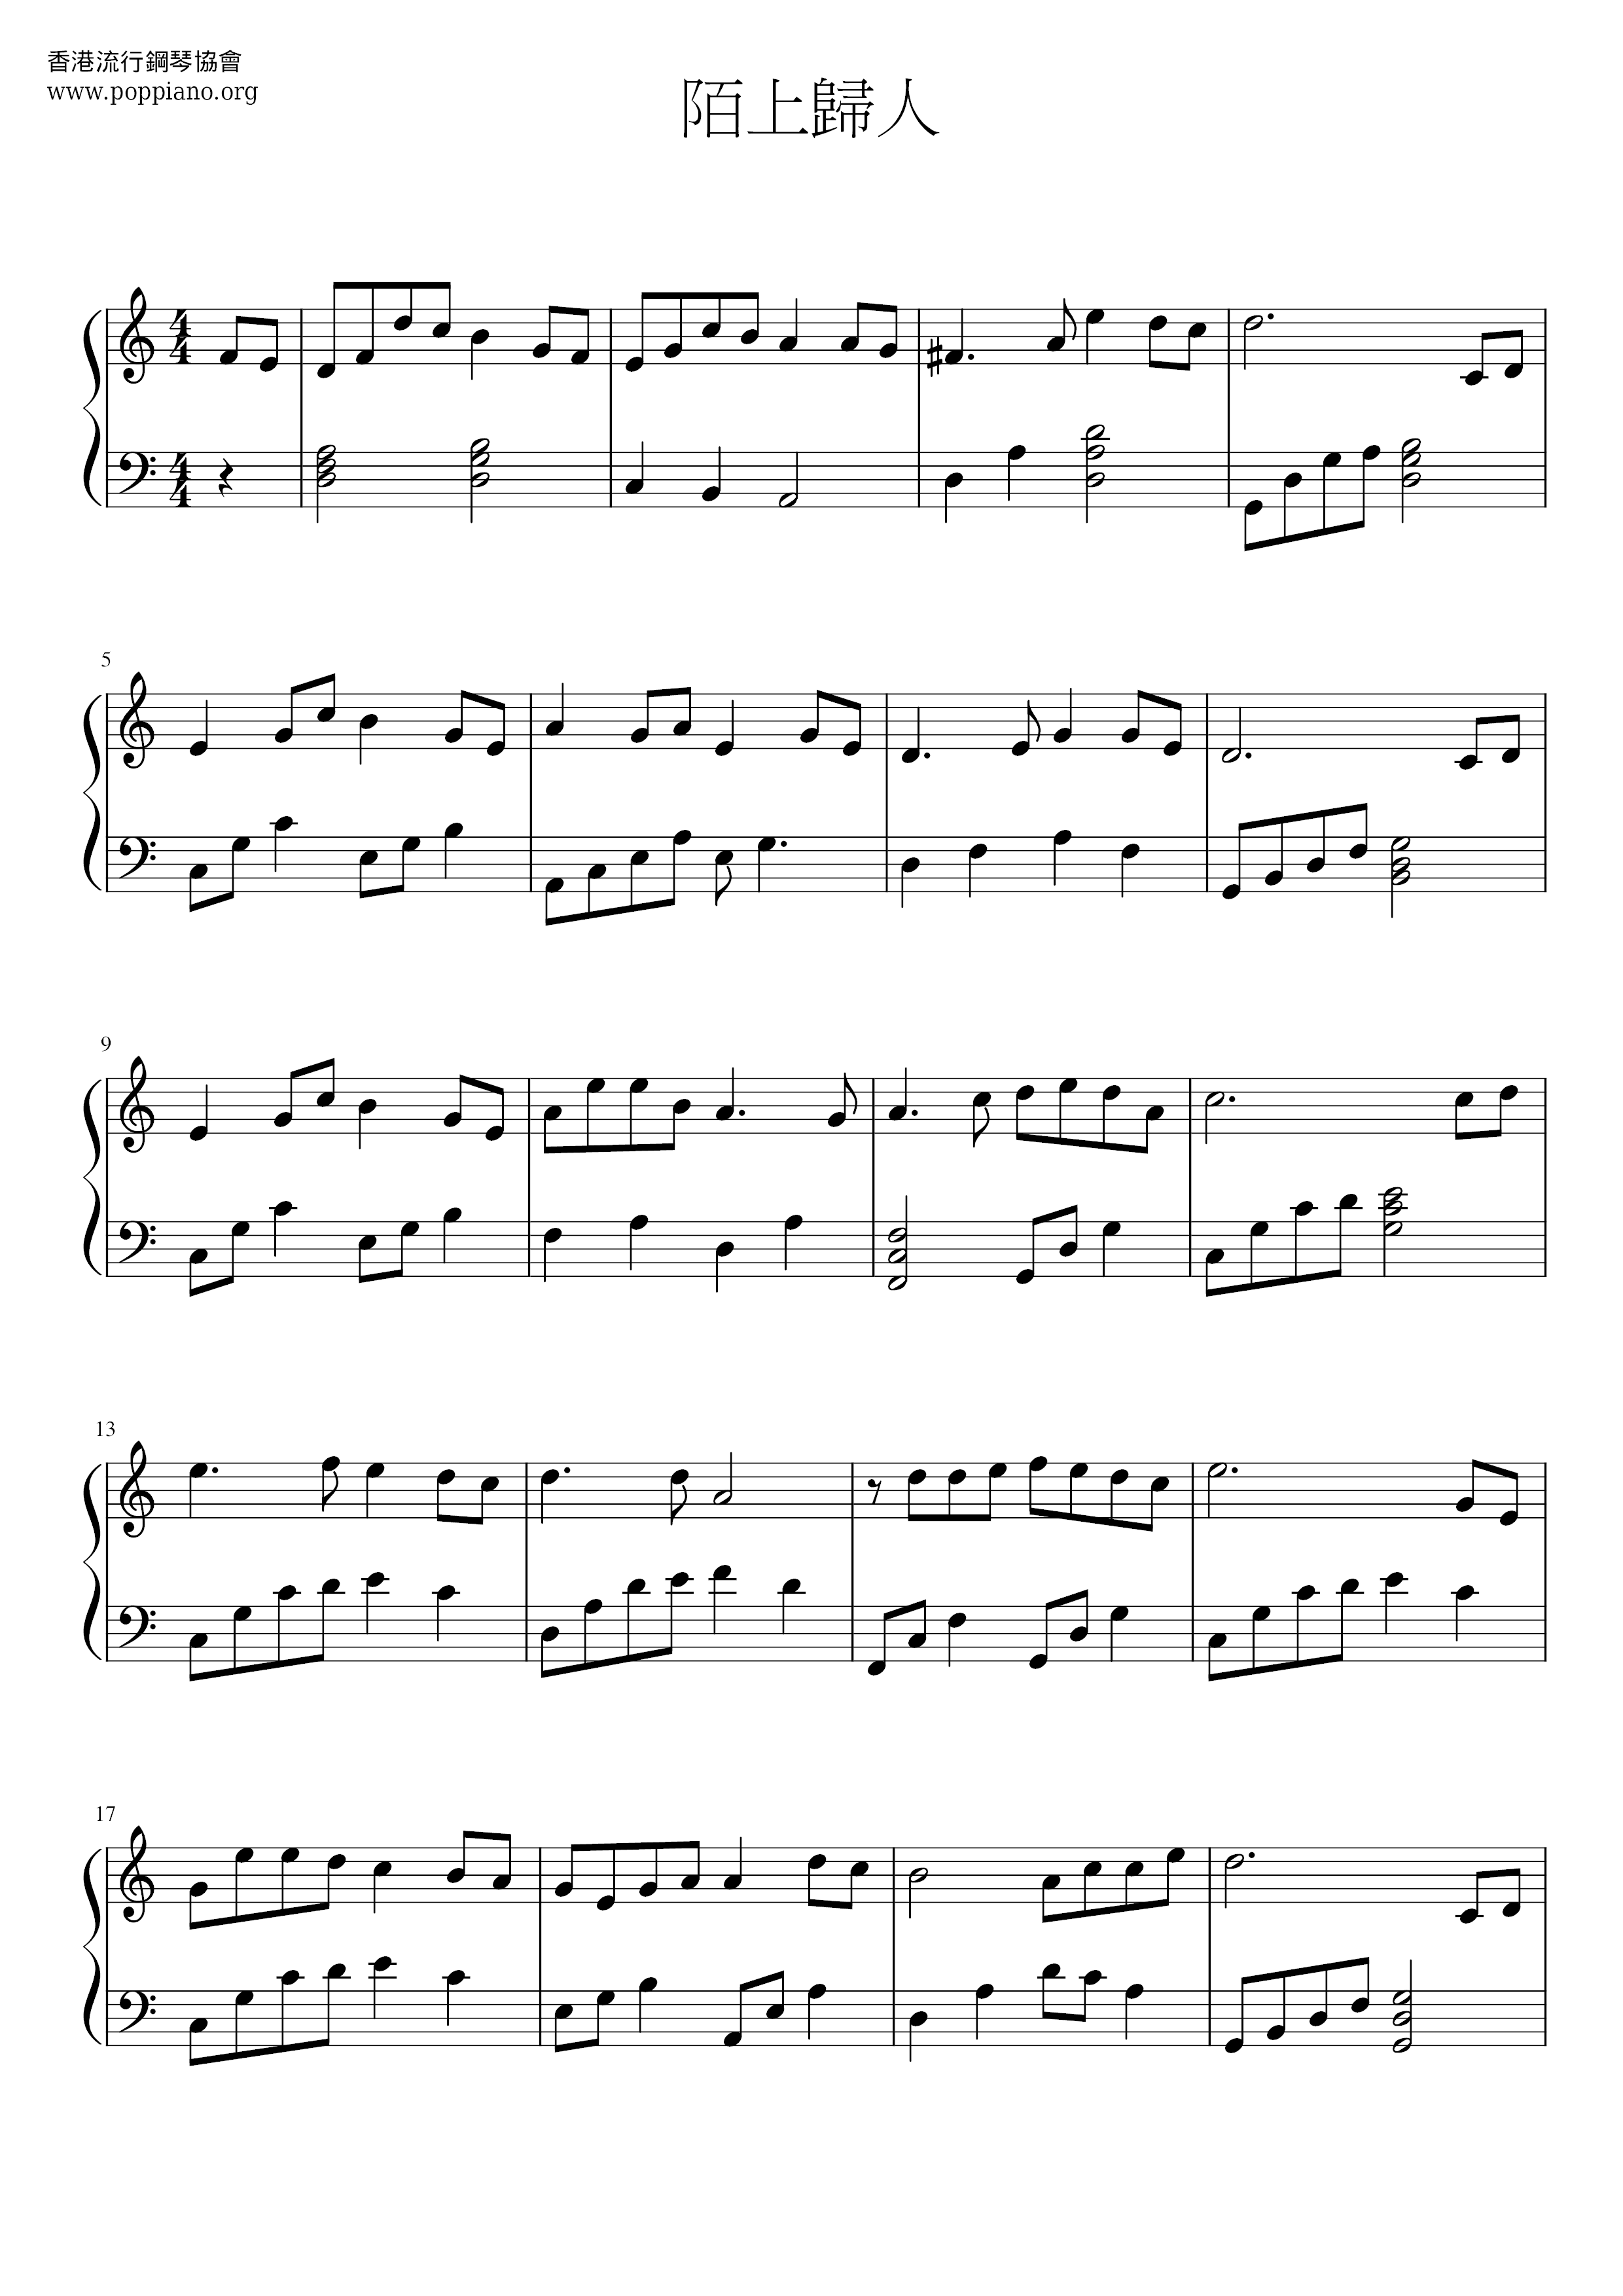 Mo Shangguiren Score